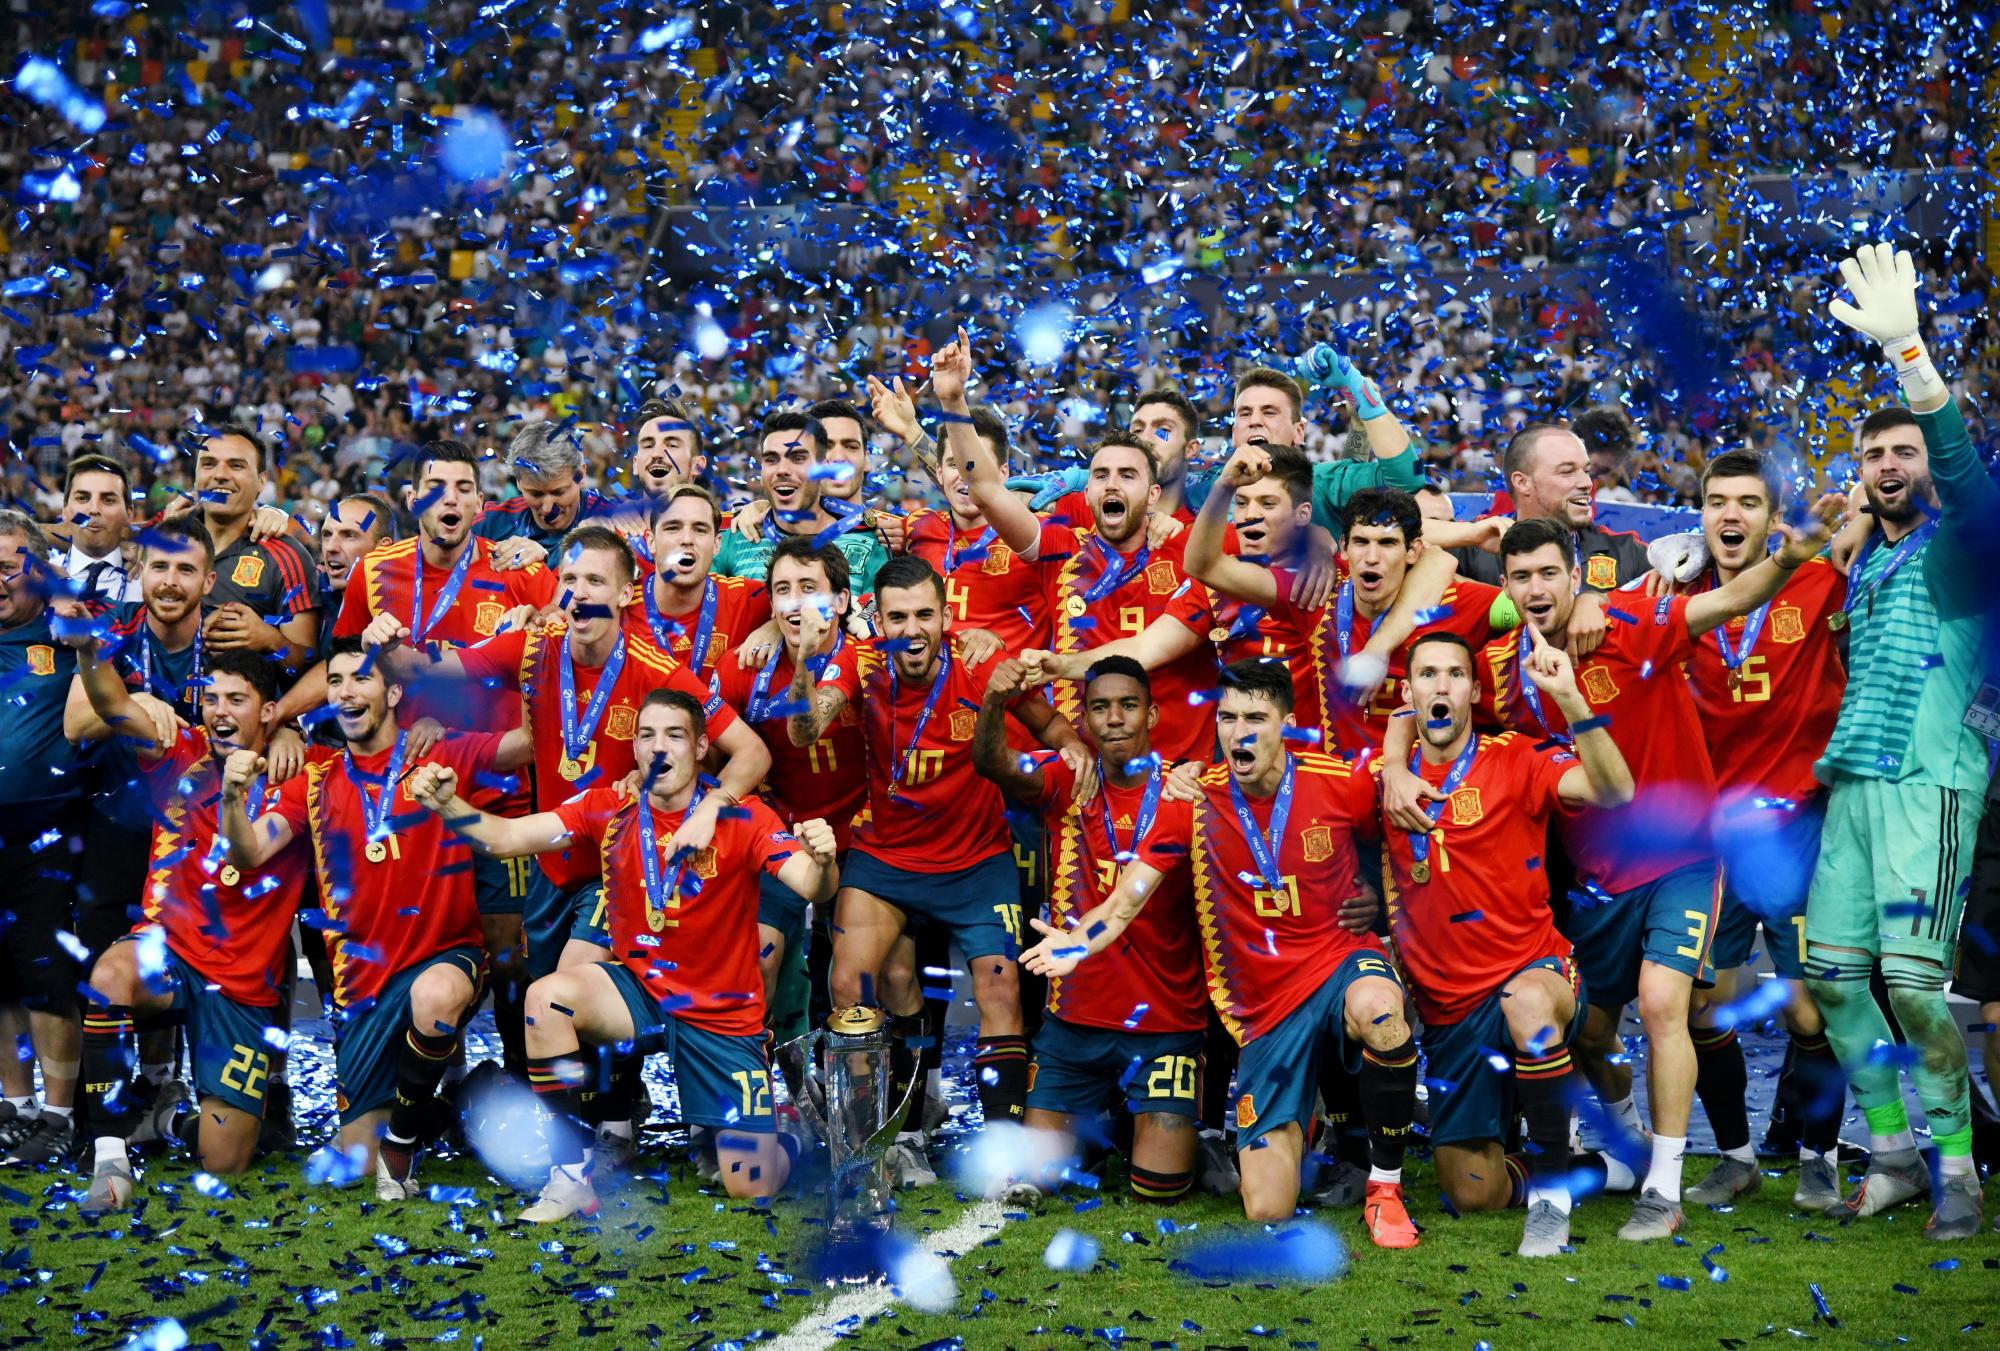 Jugadores del barcelona en la seleccion española